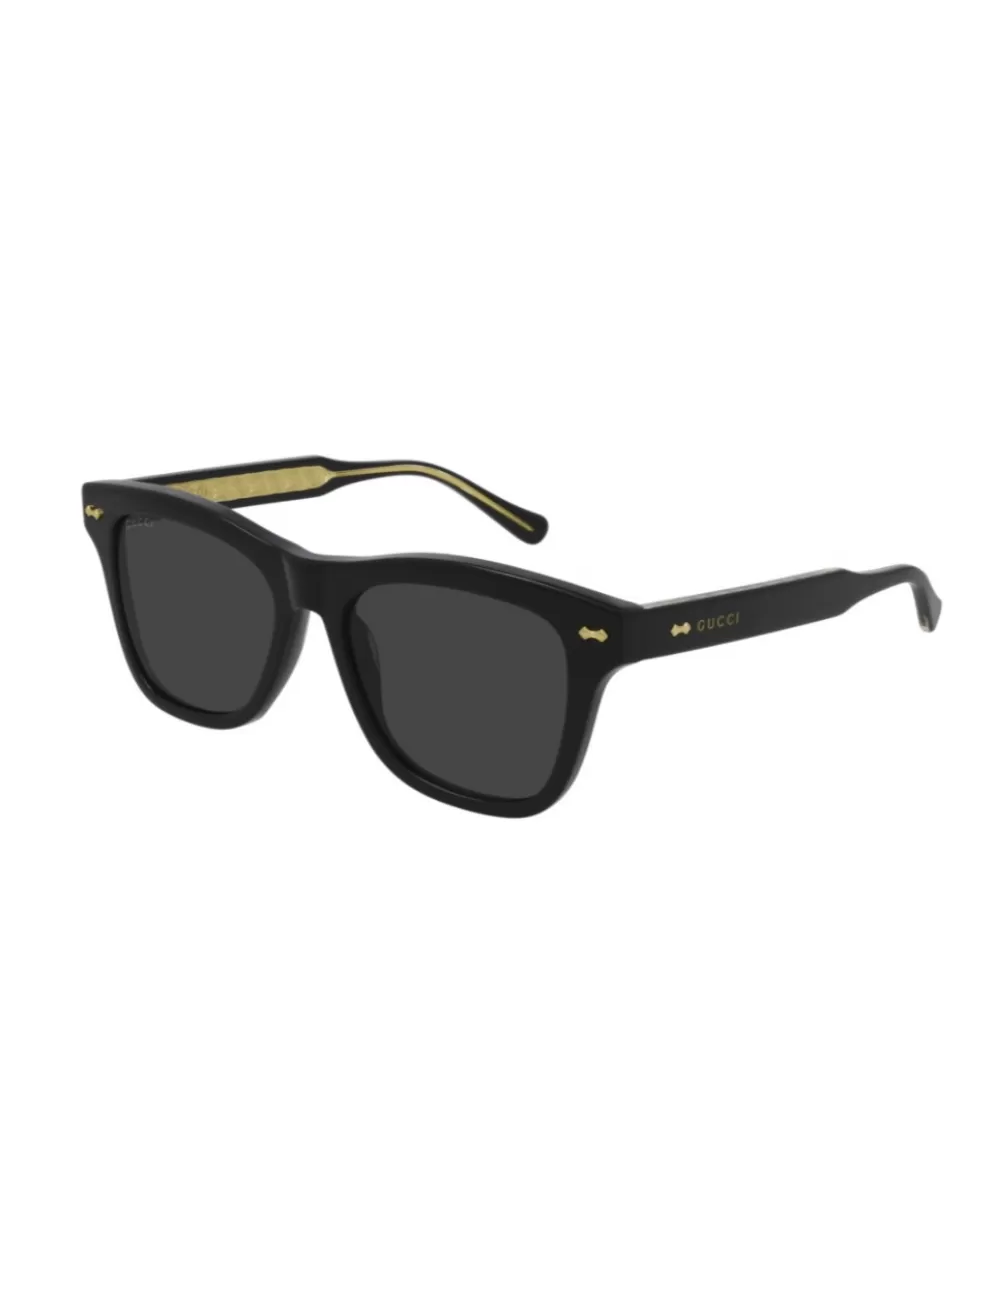 Gucci GG0910S 001 sunglasses for men – Ottica Mauro